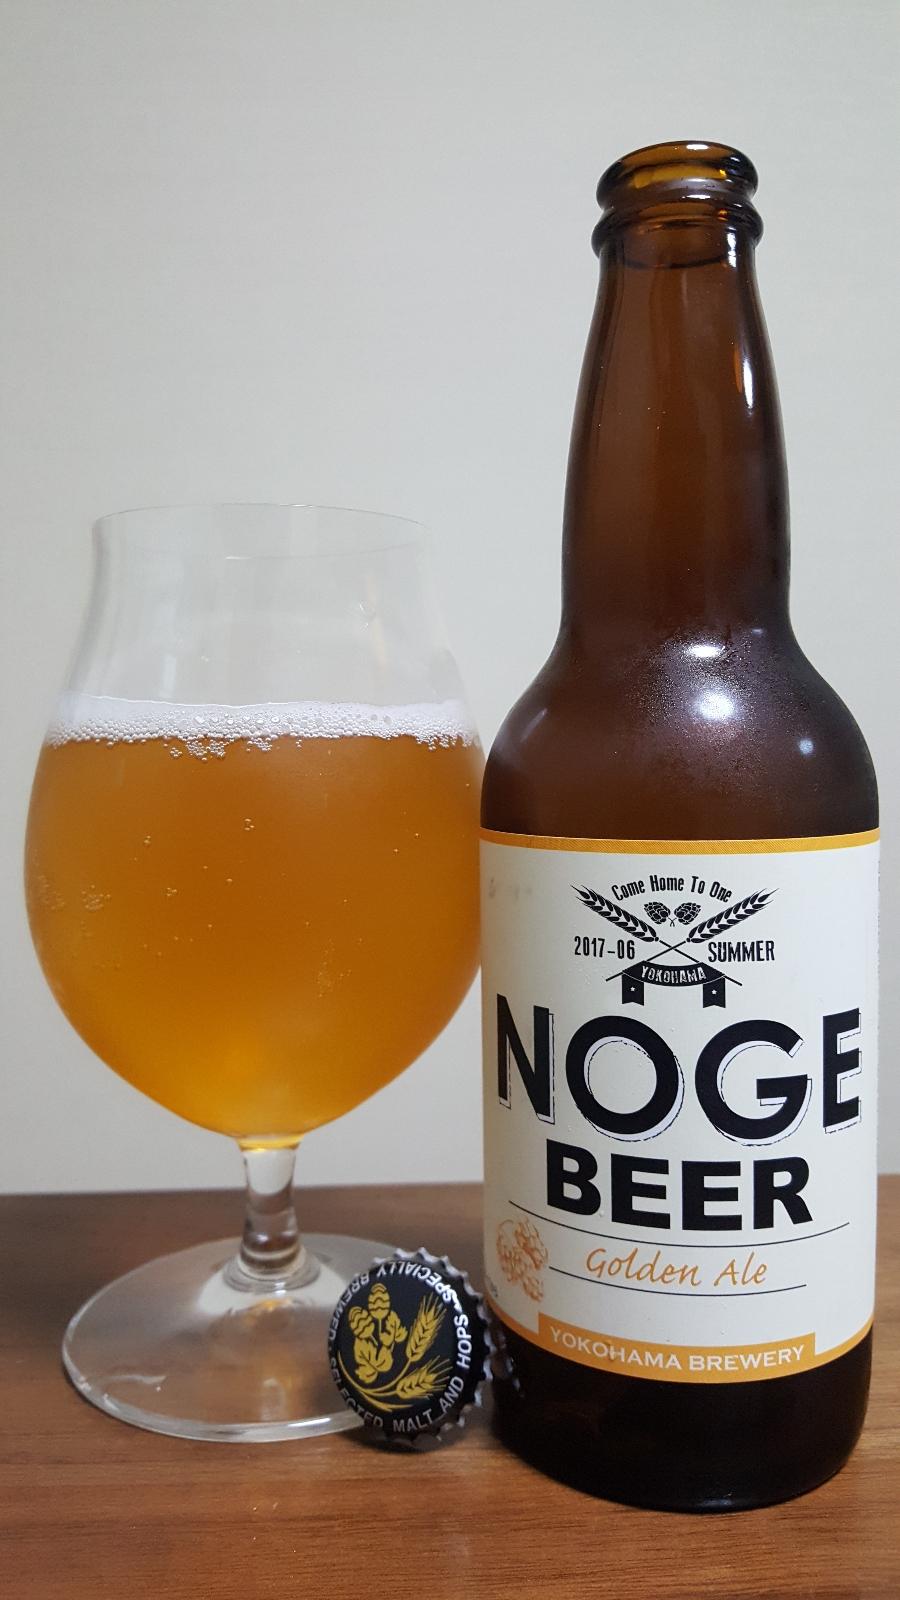 Noge Beer